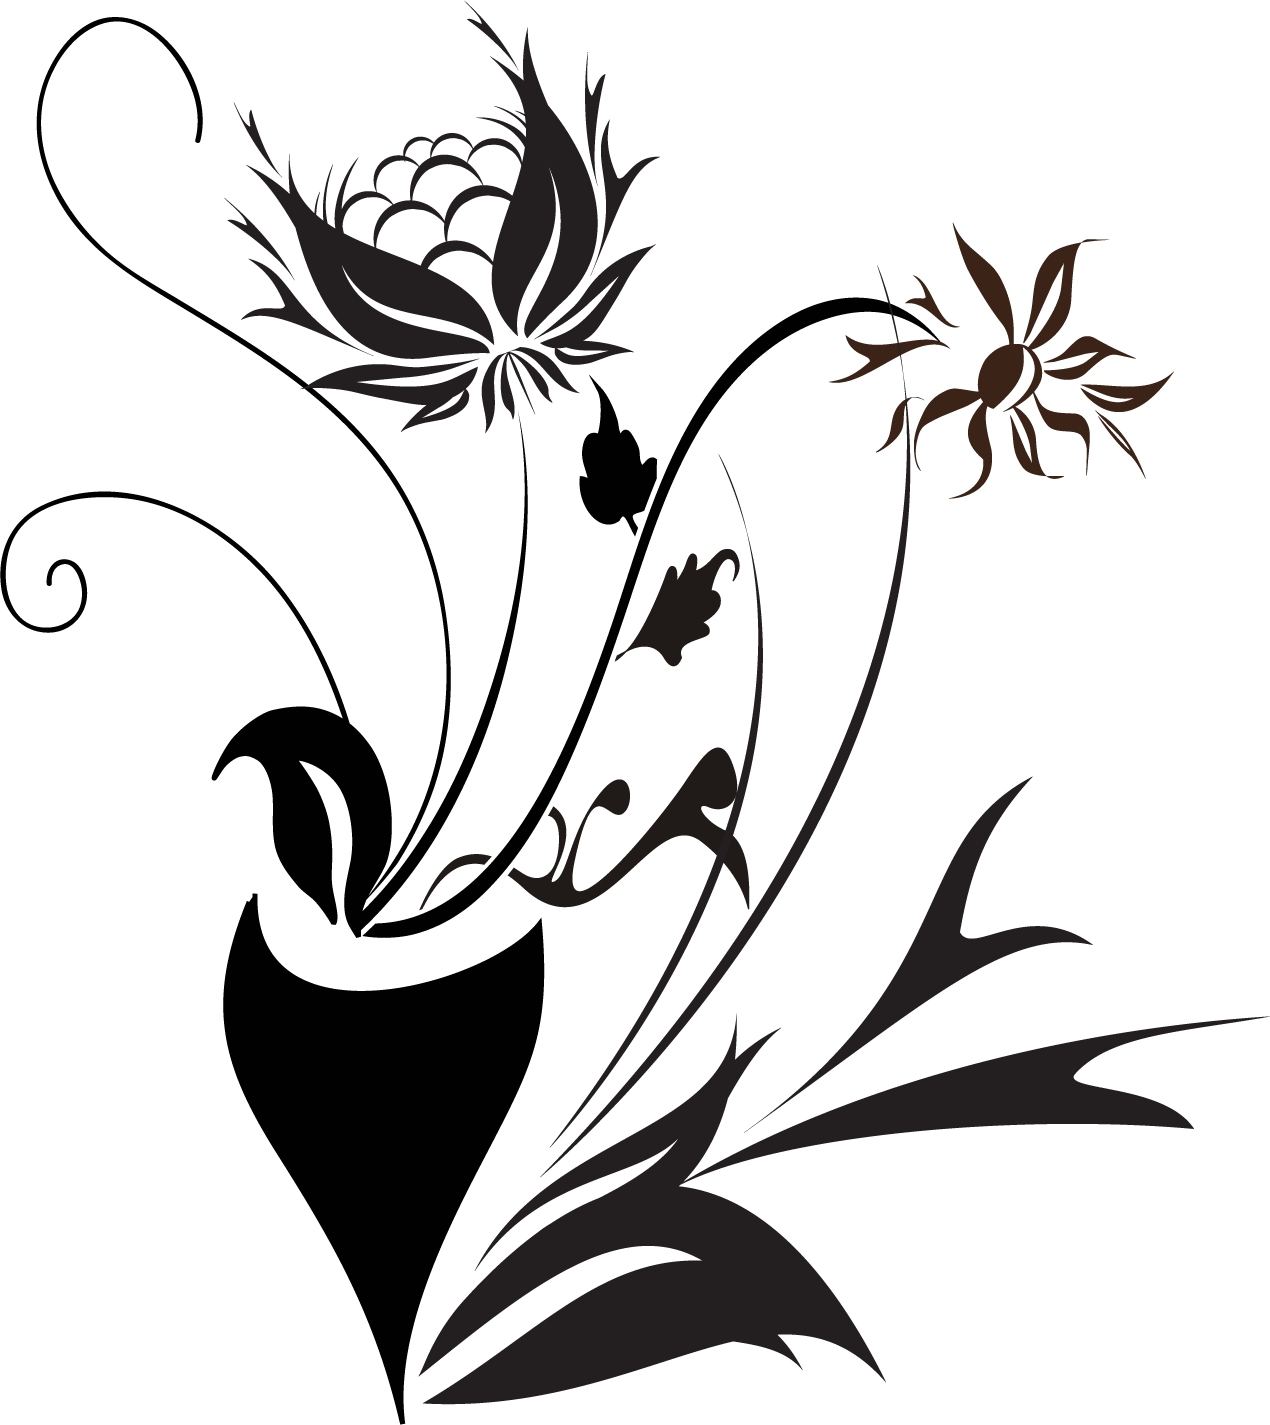 花のイラスト フリー素材 白黒 モノクロno 458 白黒 葉 S字